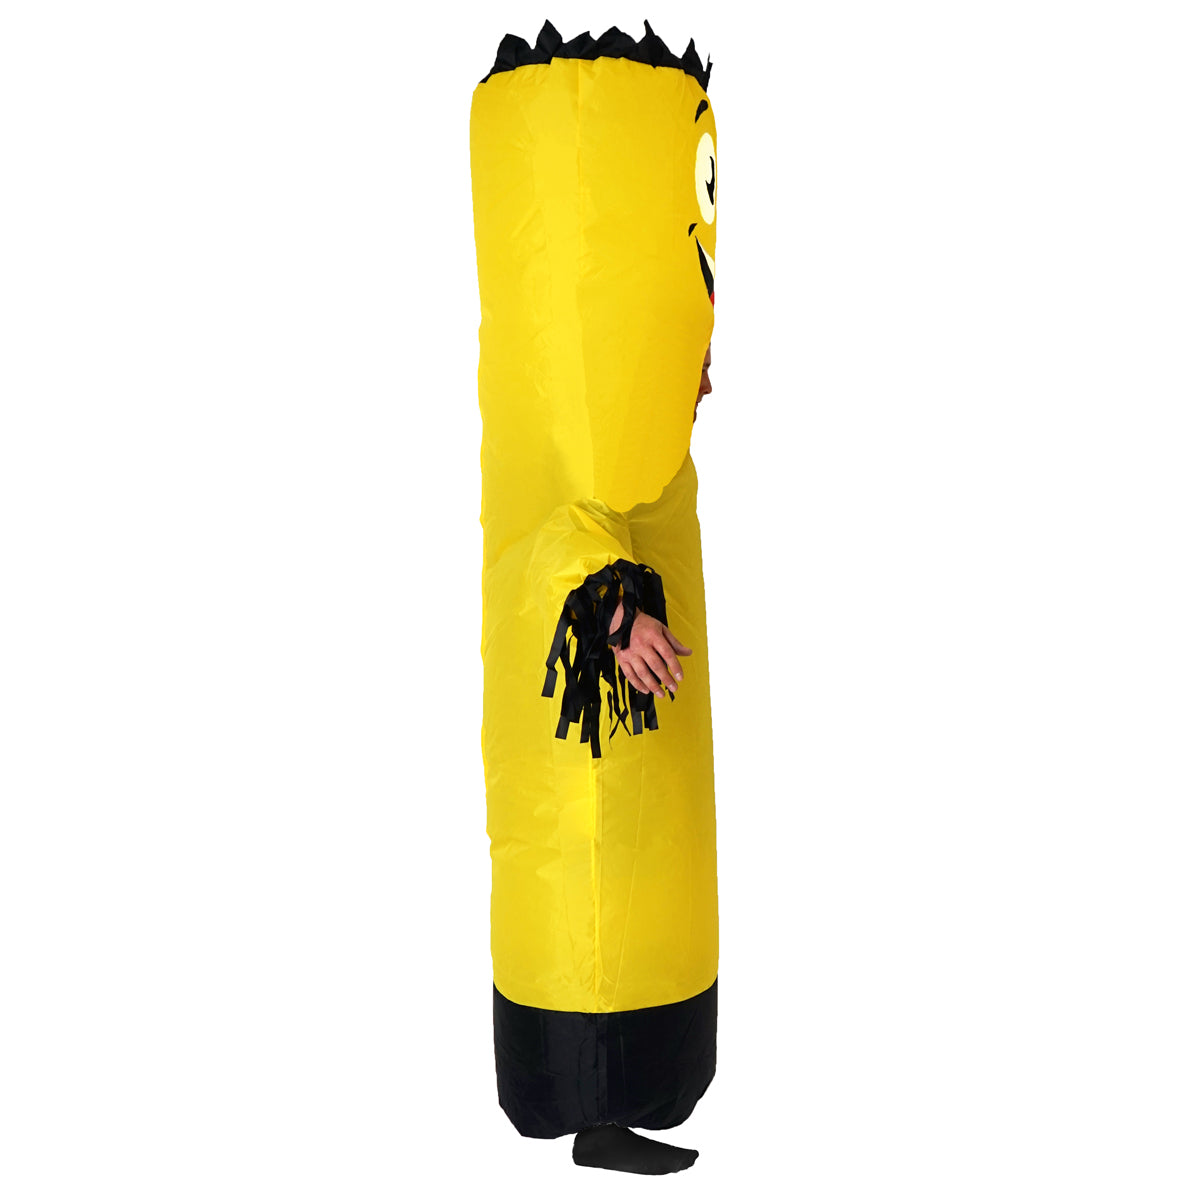 Bodysocks - Inflatable Tubeman Costume